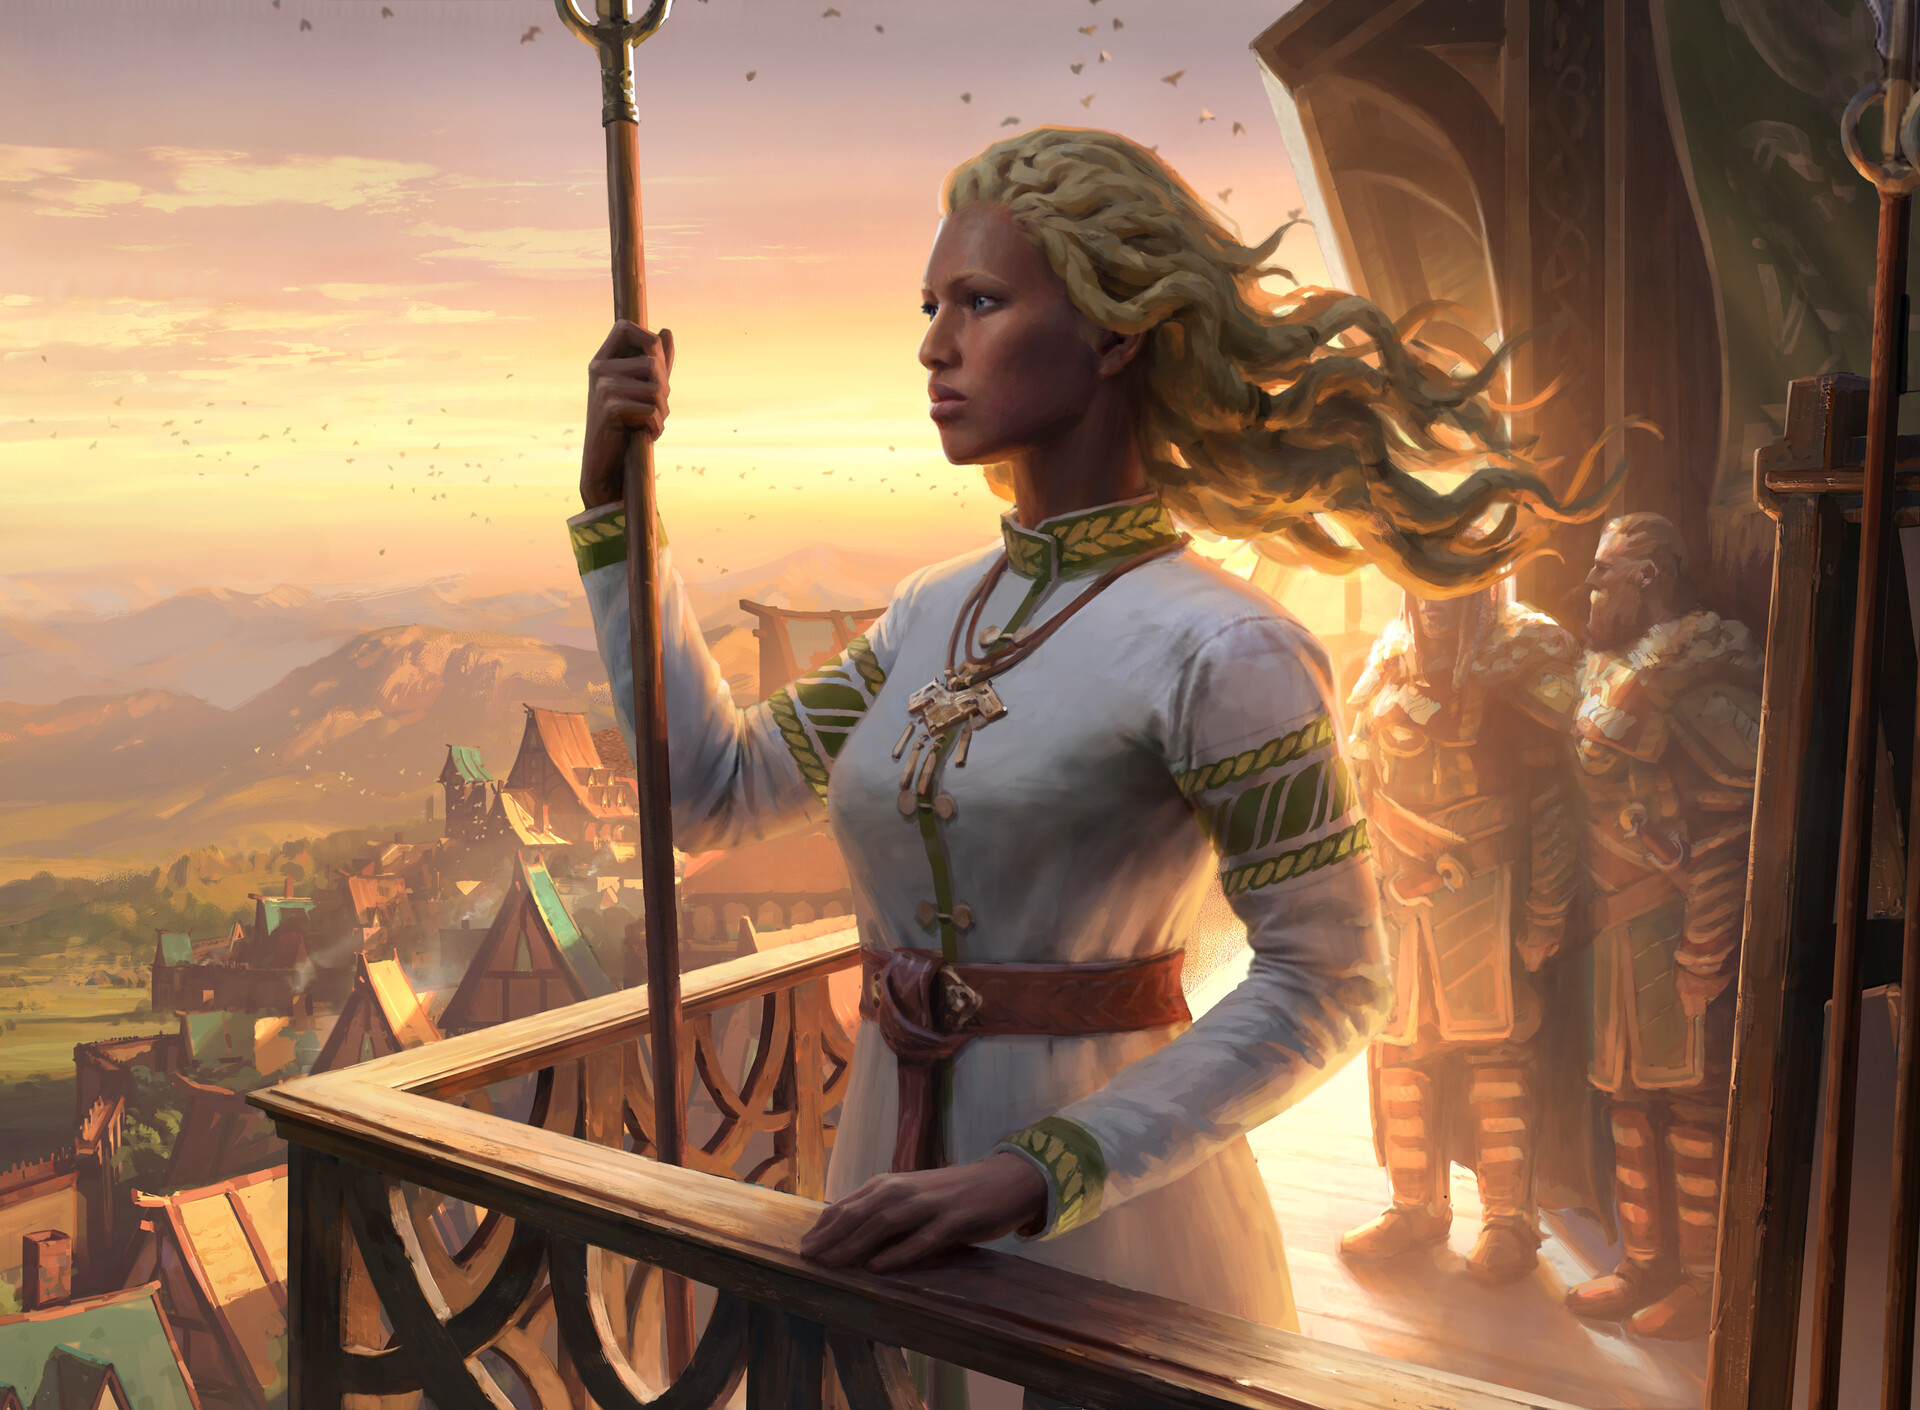 ArtStation - Eowyn shieldmaiden of Rohan